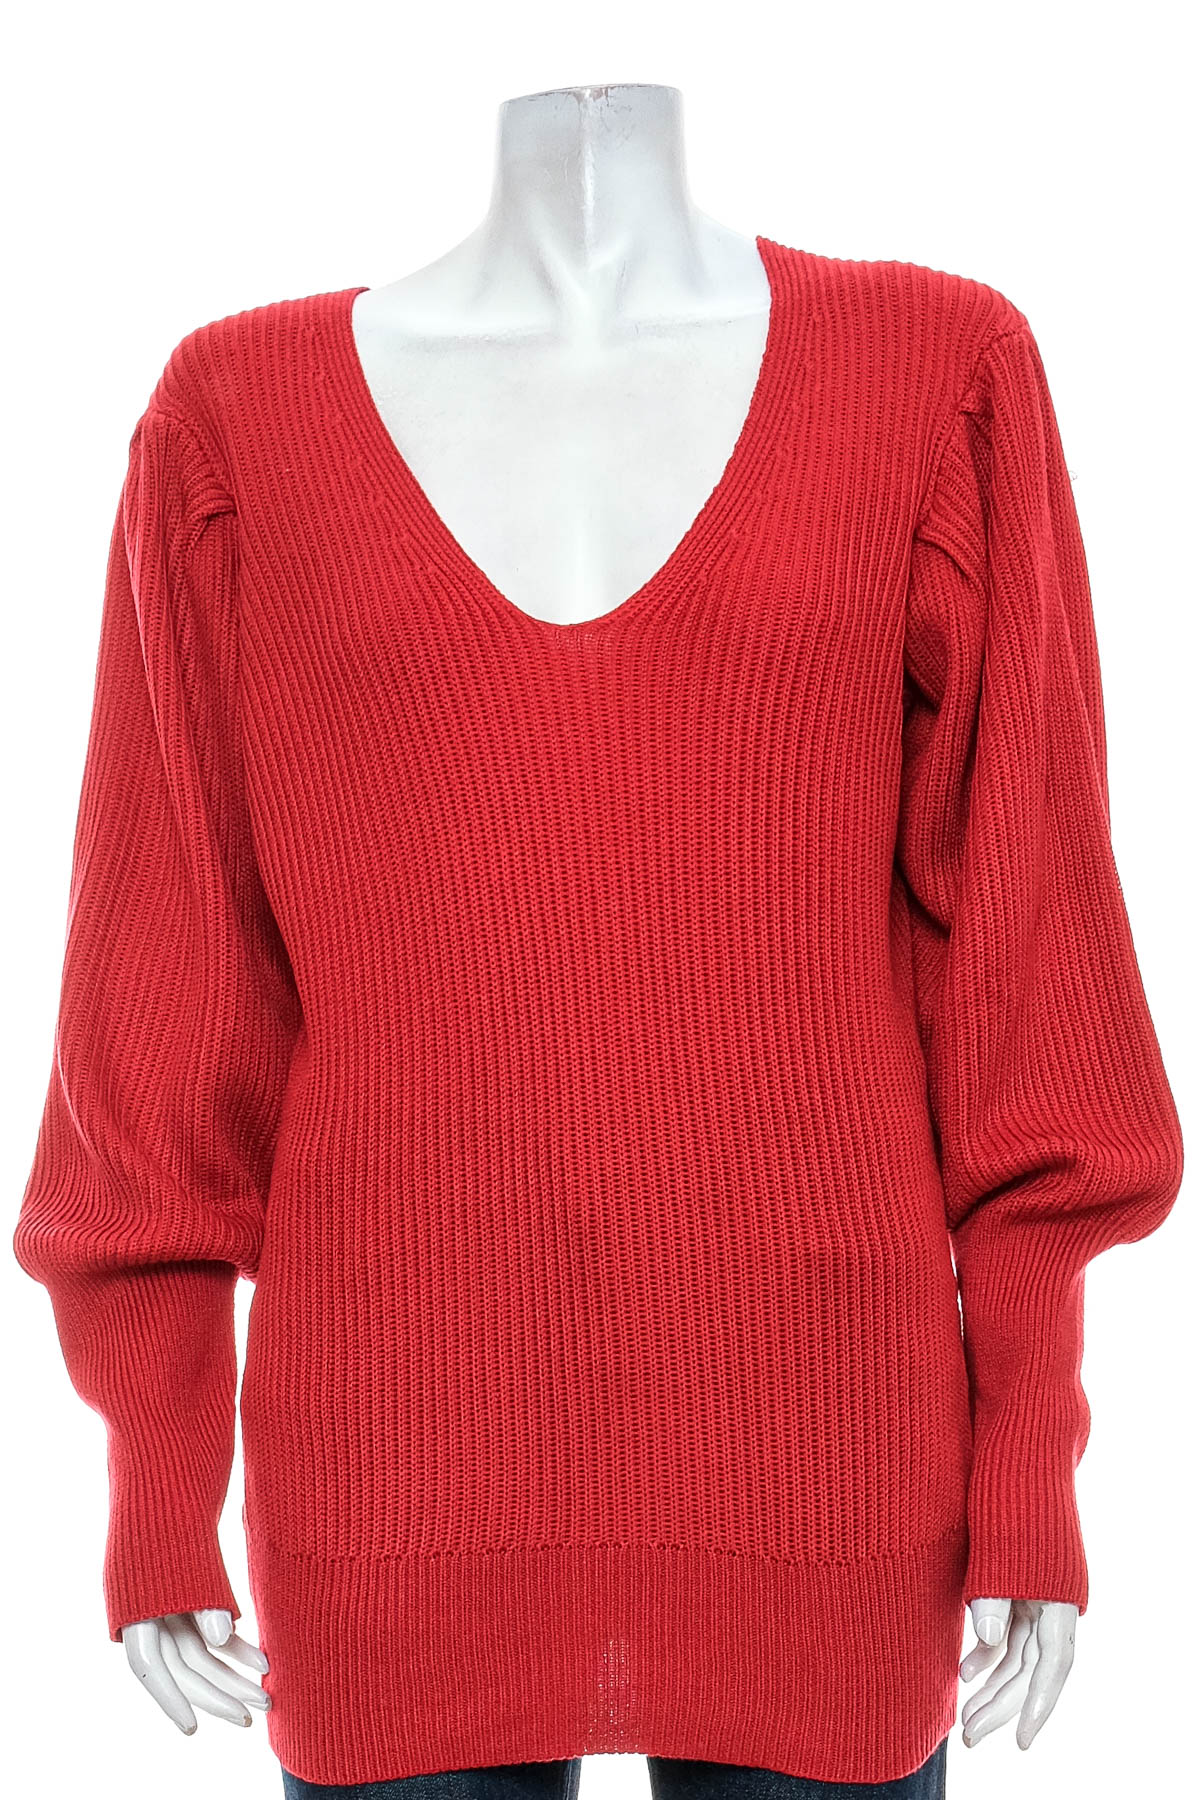 Women's sweater - BOSTON PROPER - 0